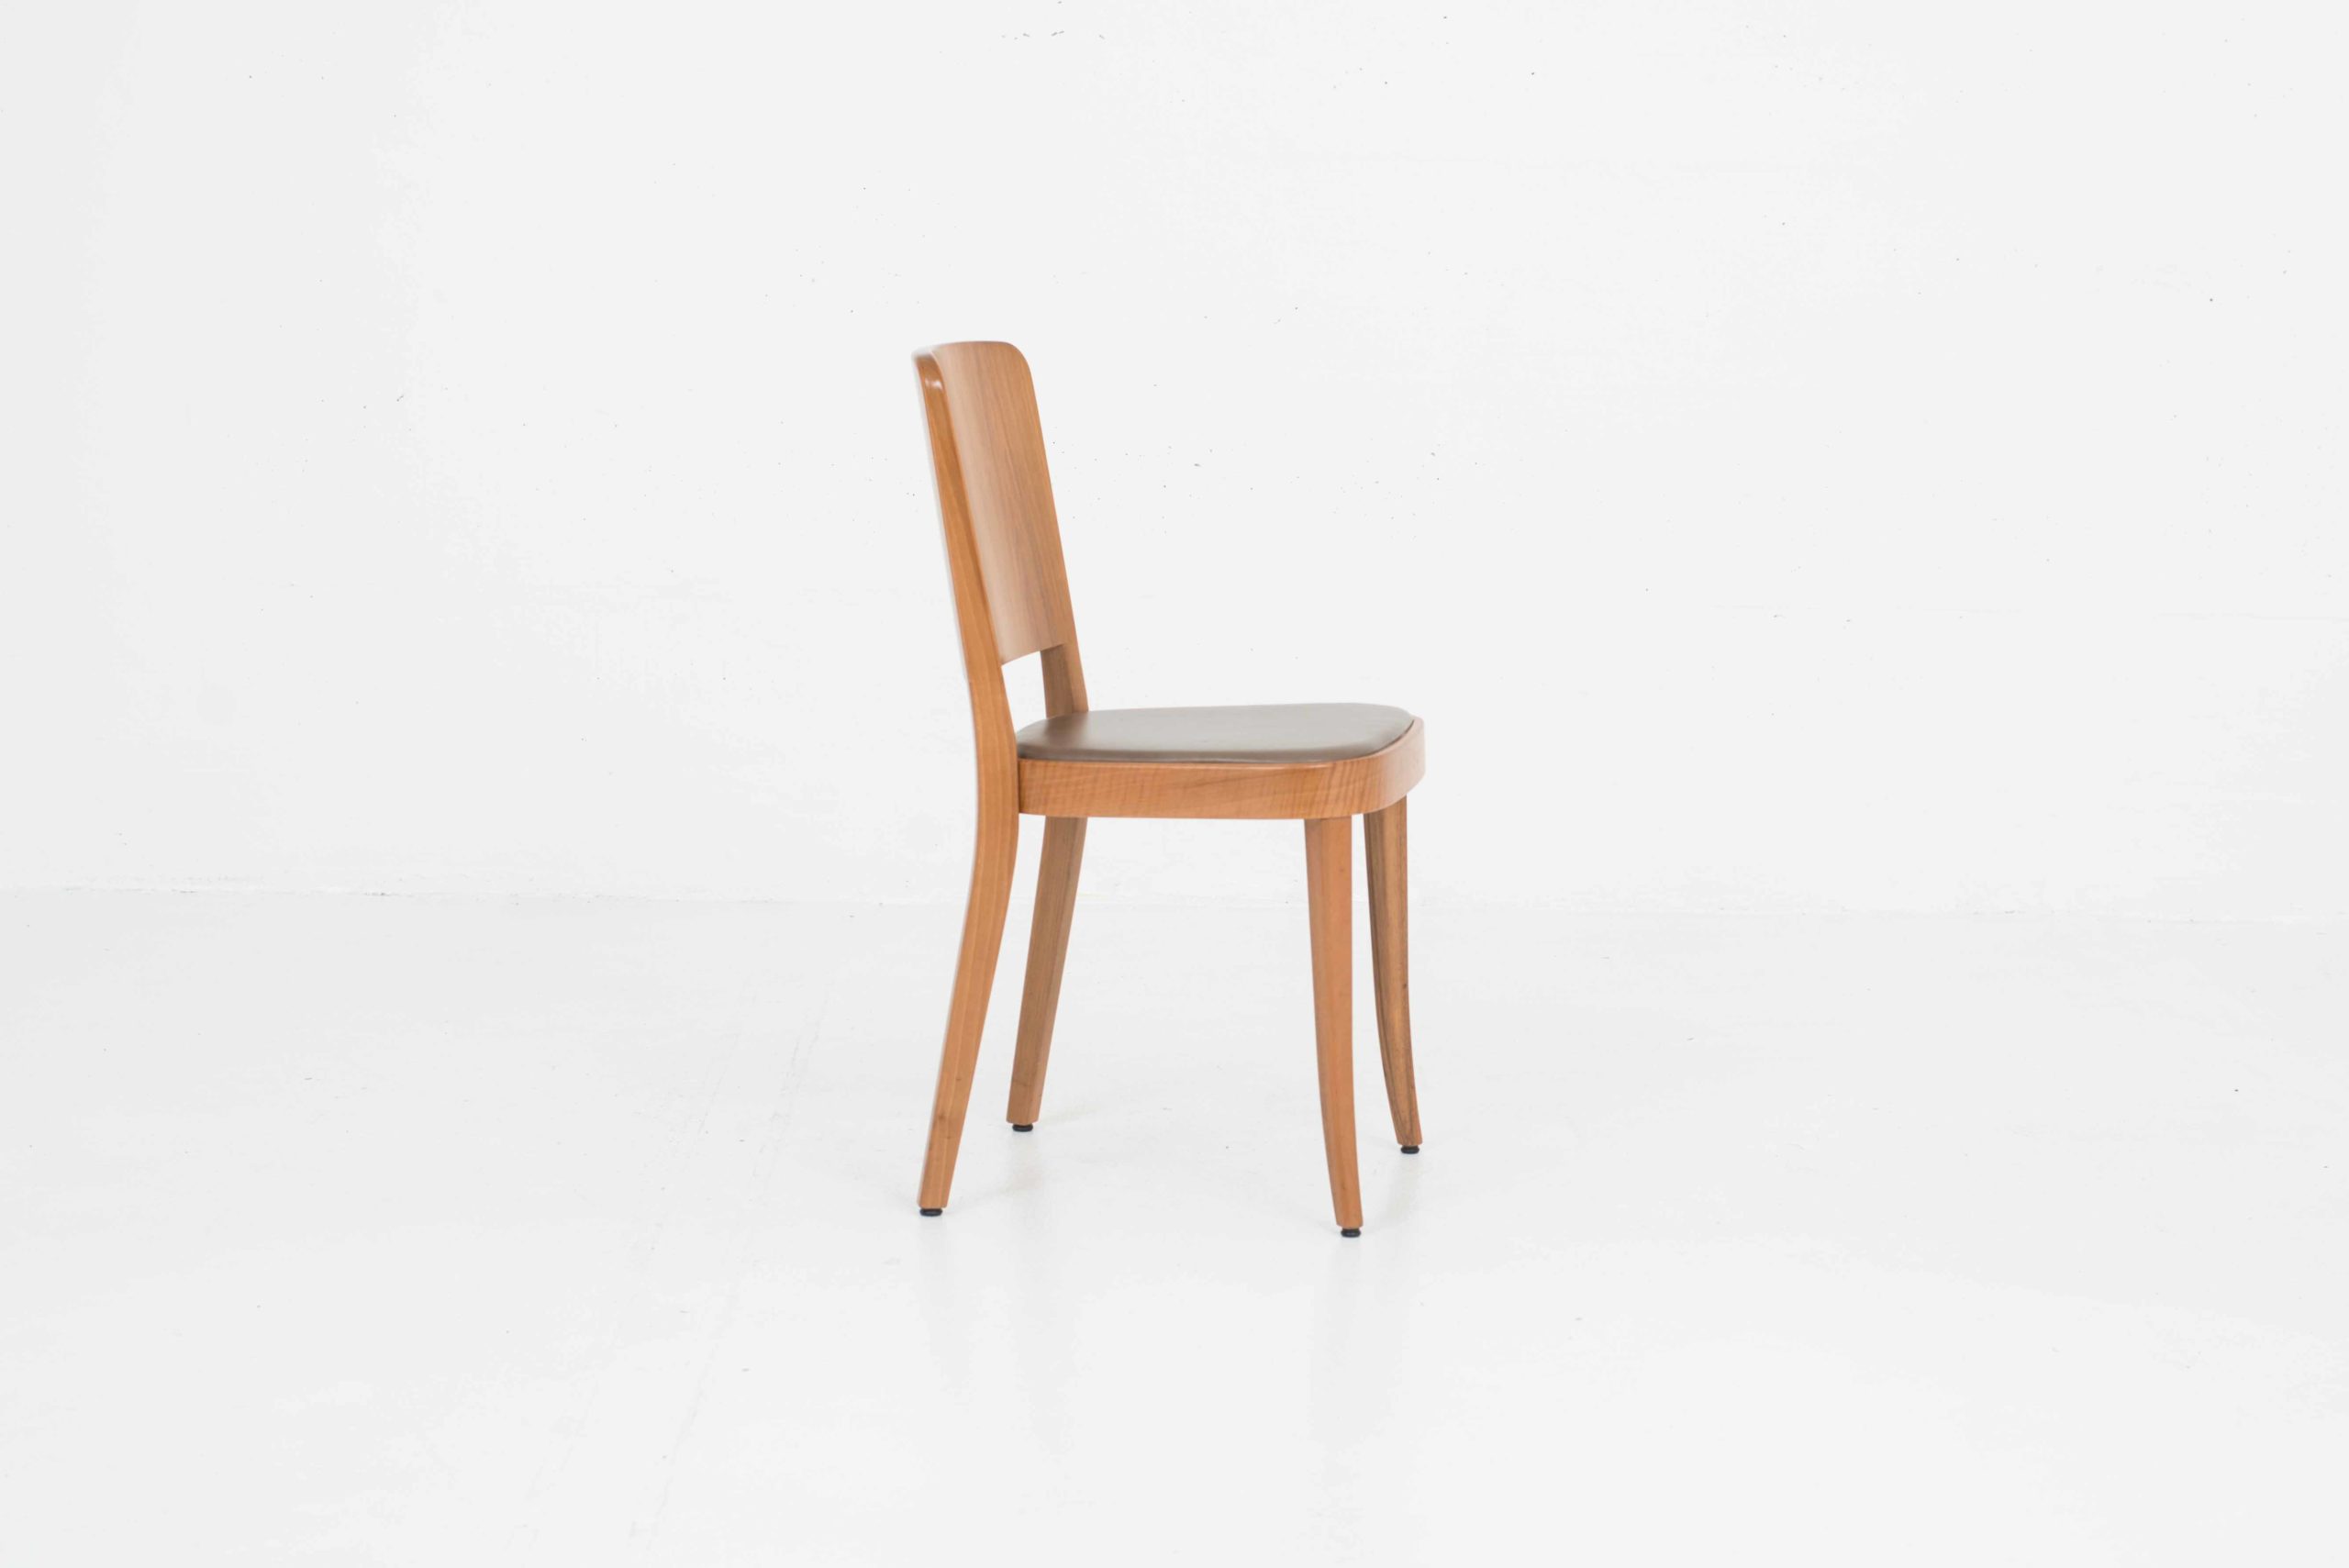 Horgenglarus 1-793 Stühle von Max Ernst Haefeli, im Zweierset-3